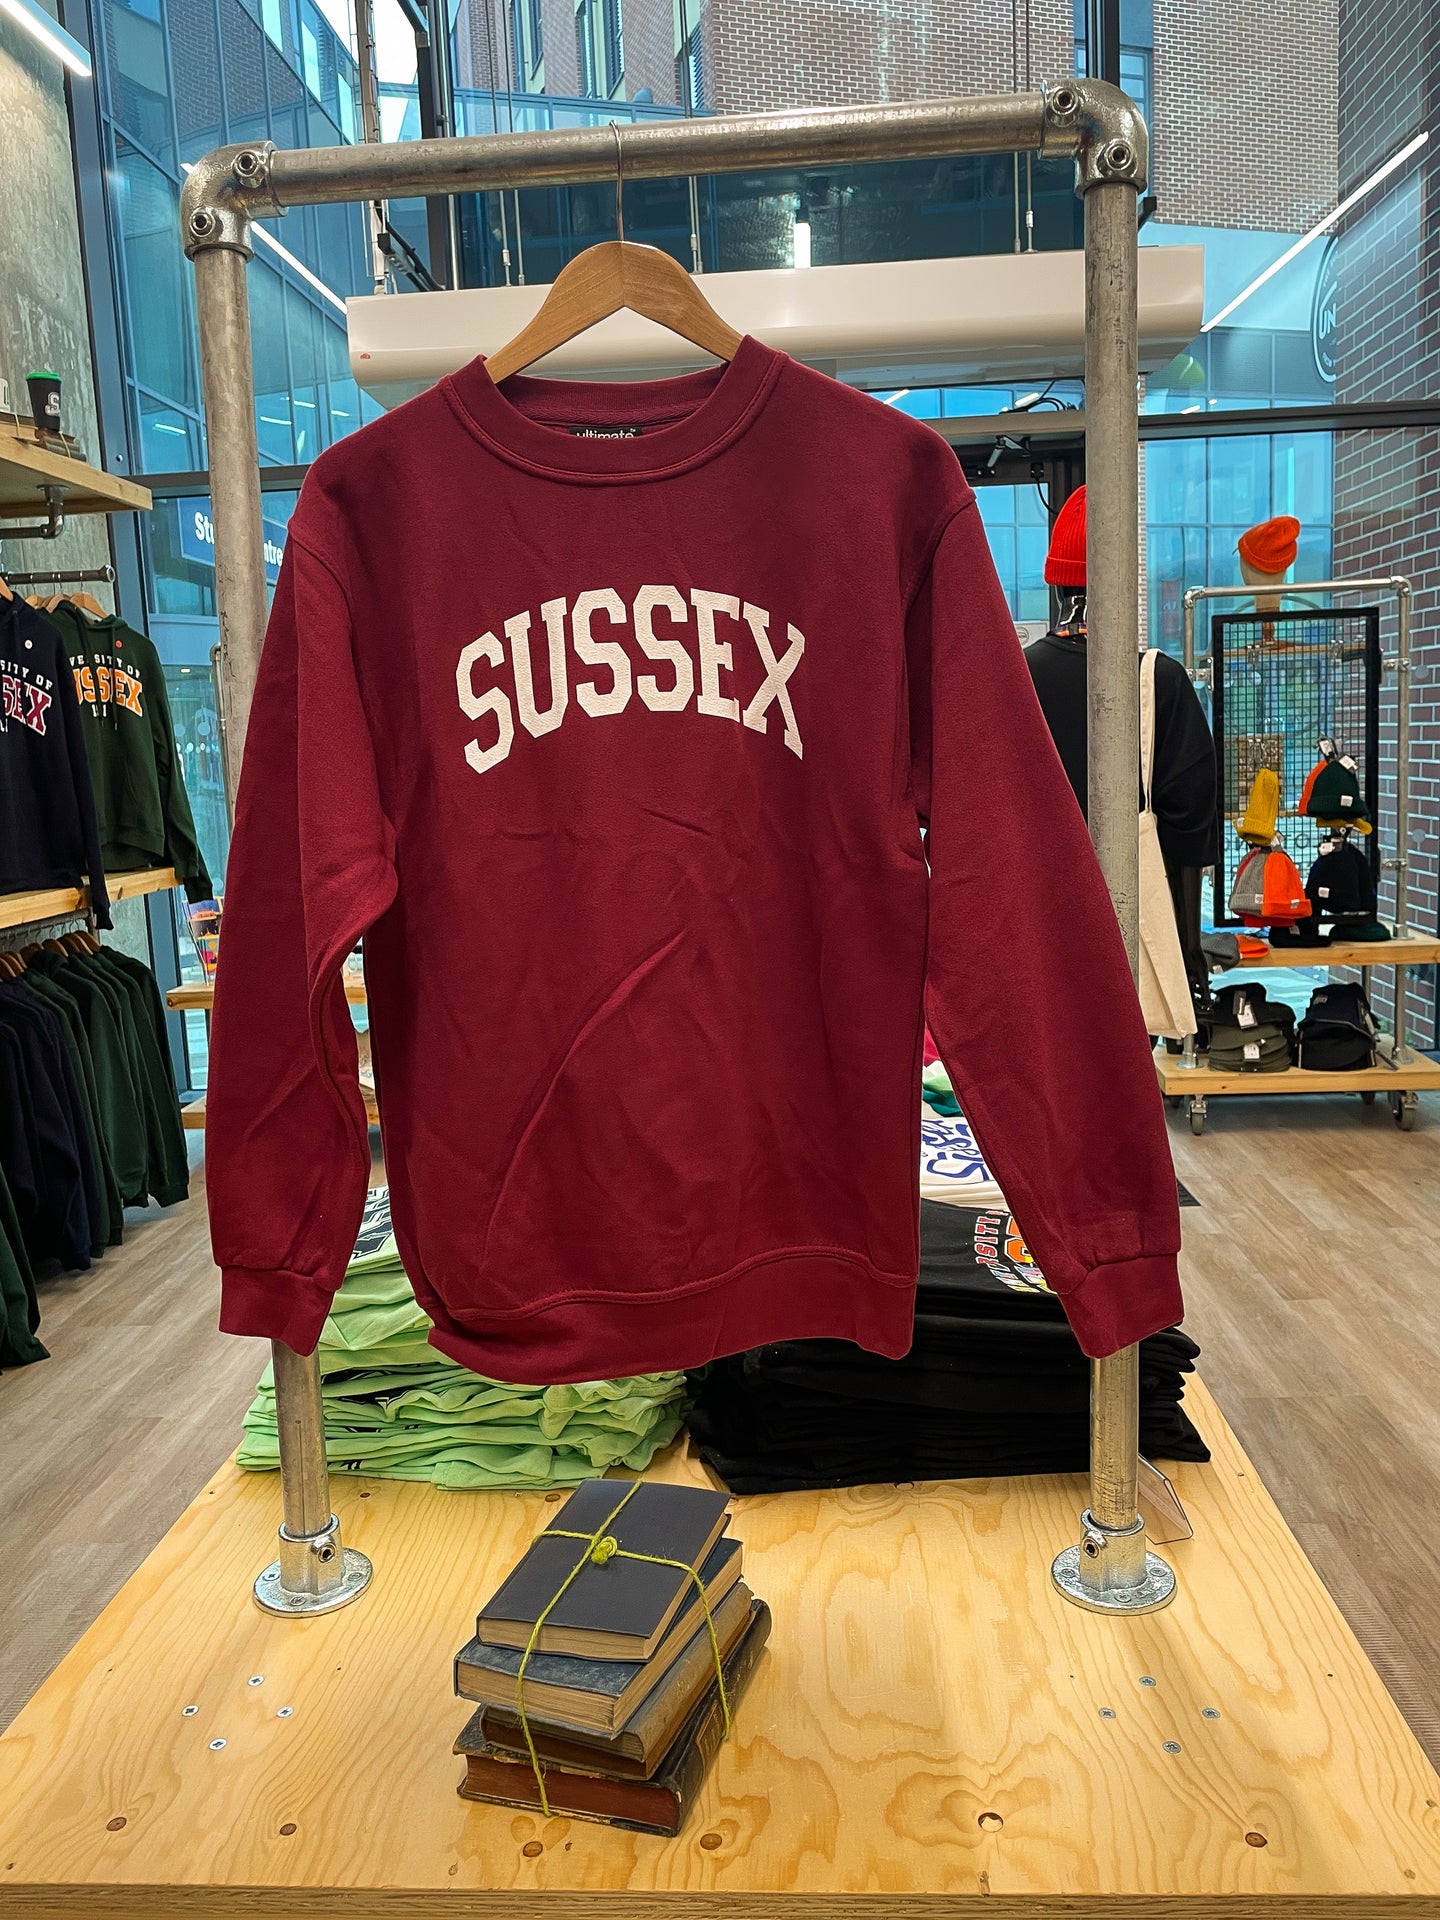 Just SUSSEX sweatshirt